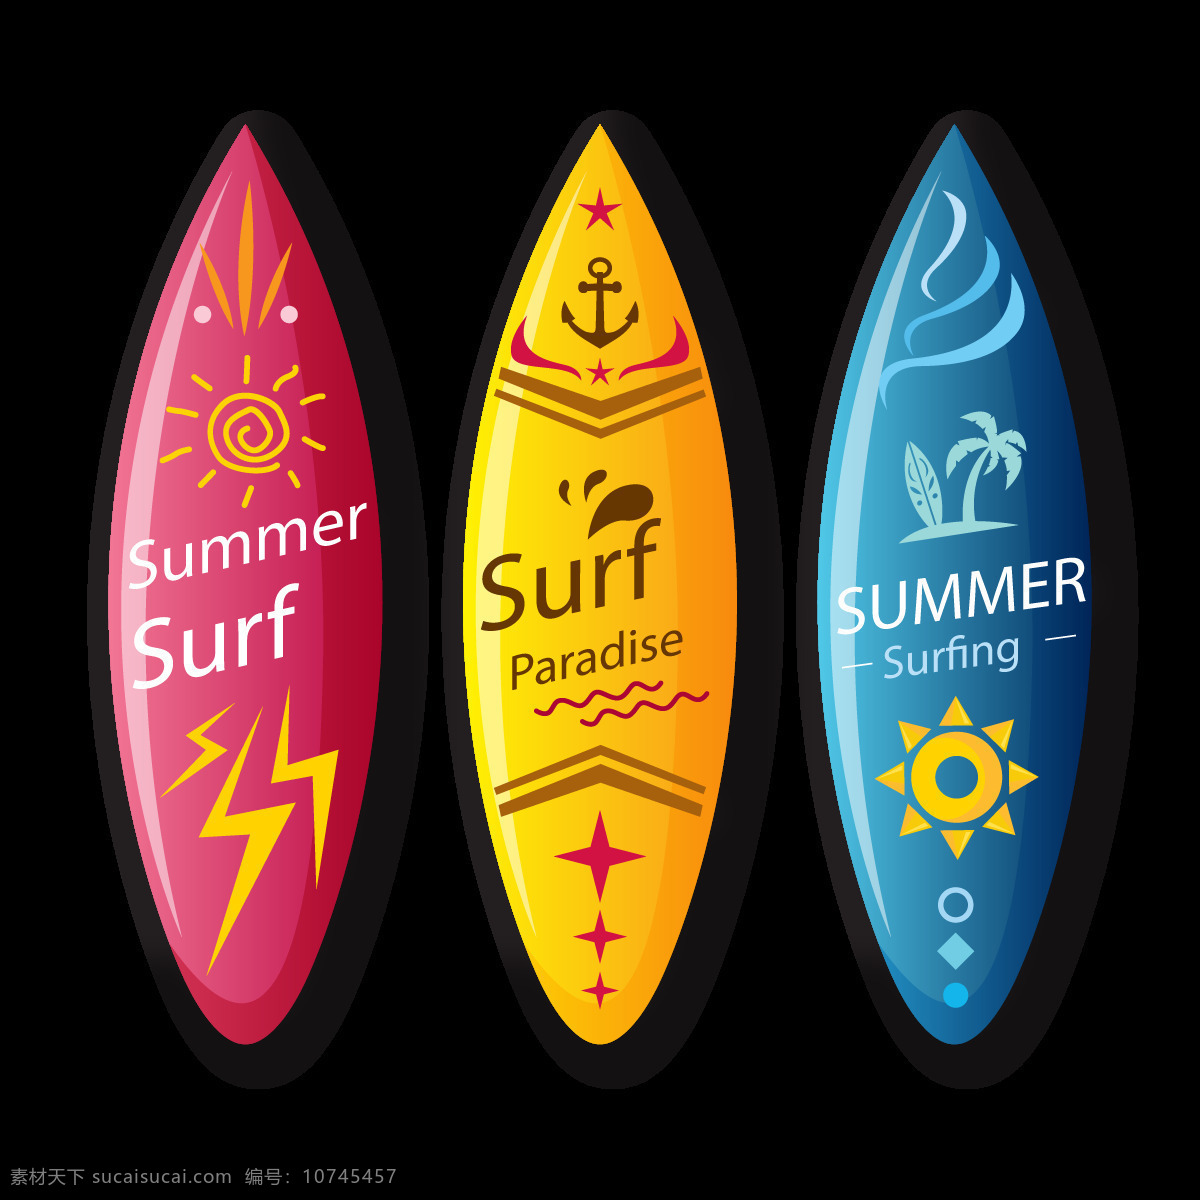 冲浪板 夏天 健身 冲浪 色彩 平面 运动 培训 青年 生活方式 时尚 夏季 类型 底纹边框 其他素材